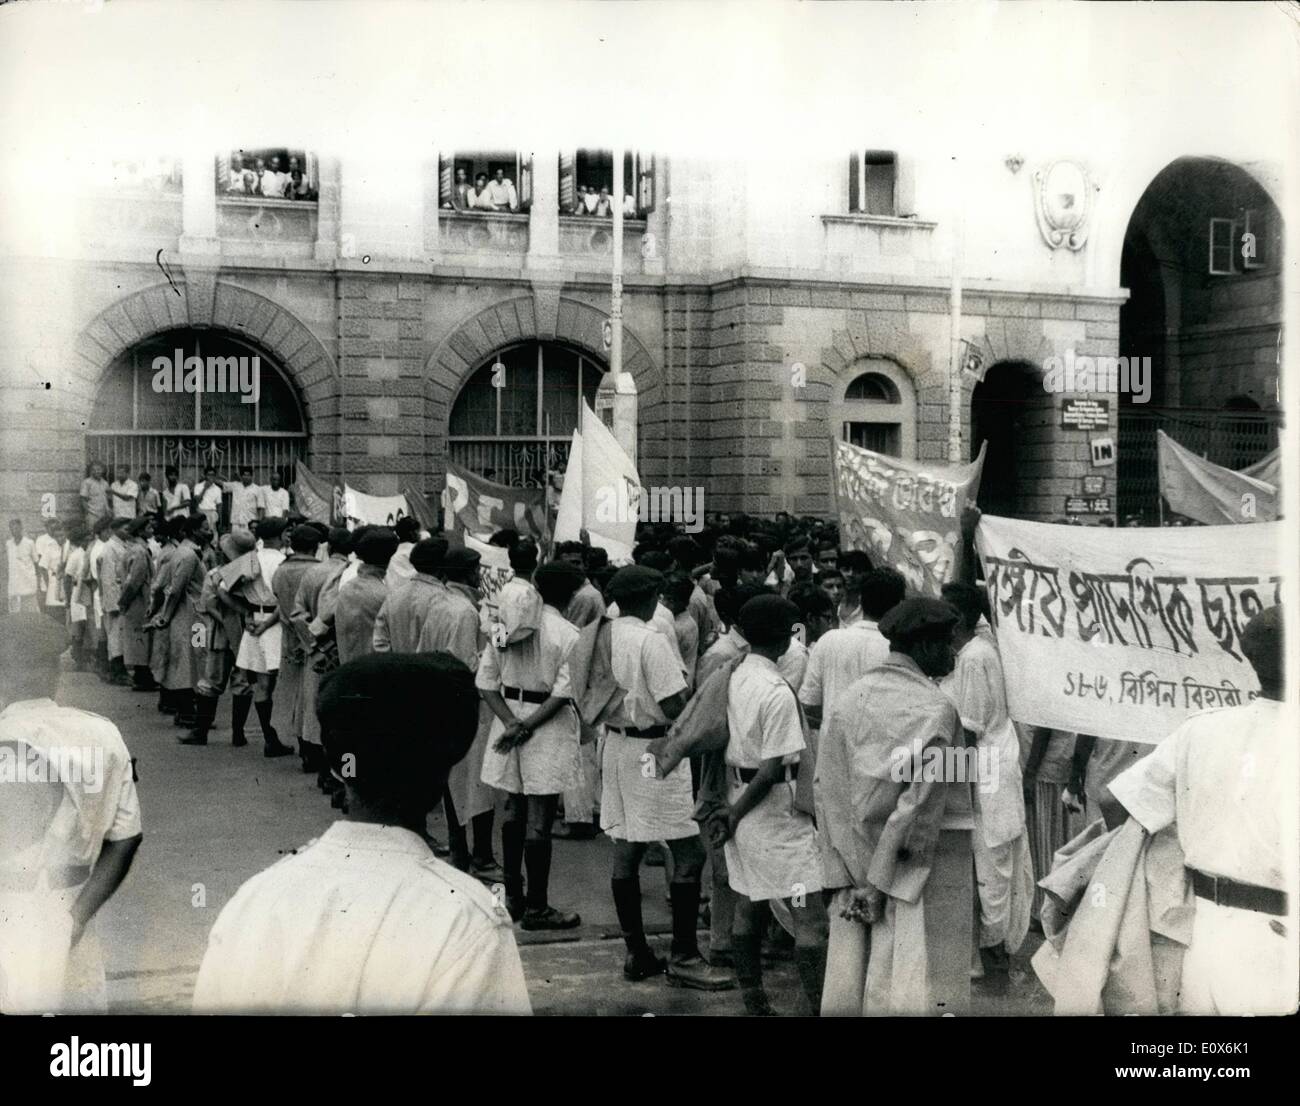 Agosto 08, 1965 - manifestazione studentesca a Calcutta. Scolari e studenti del college di Calcutta, ha lanciato una massiccia manifestazione di protesta contro l'aumento nella città del tram di tariffe che è diventata effettiva il 27 luglio. Guidato da comunisti e altri sette partiti di sinistra, gli studenti durante i primi due giorni della manifestazione (luglio 27-28), boicottato le classi e accovacciata sui binari del tram impedendo così il movimento dei veicoli. Mostra fotografica di:- un enorme corteo di studenti dimostrando, è stato fermato dalla polizia vicino alla residenza del governatore nel centro di Calcutta Foto Stock